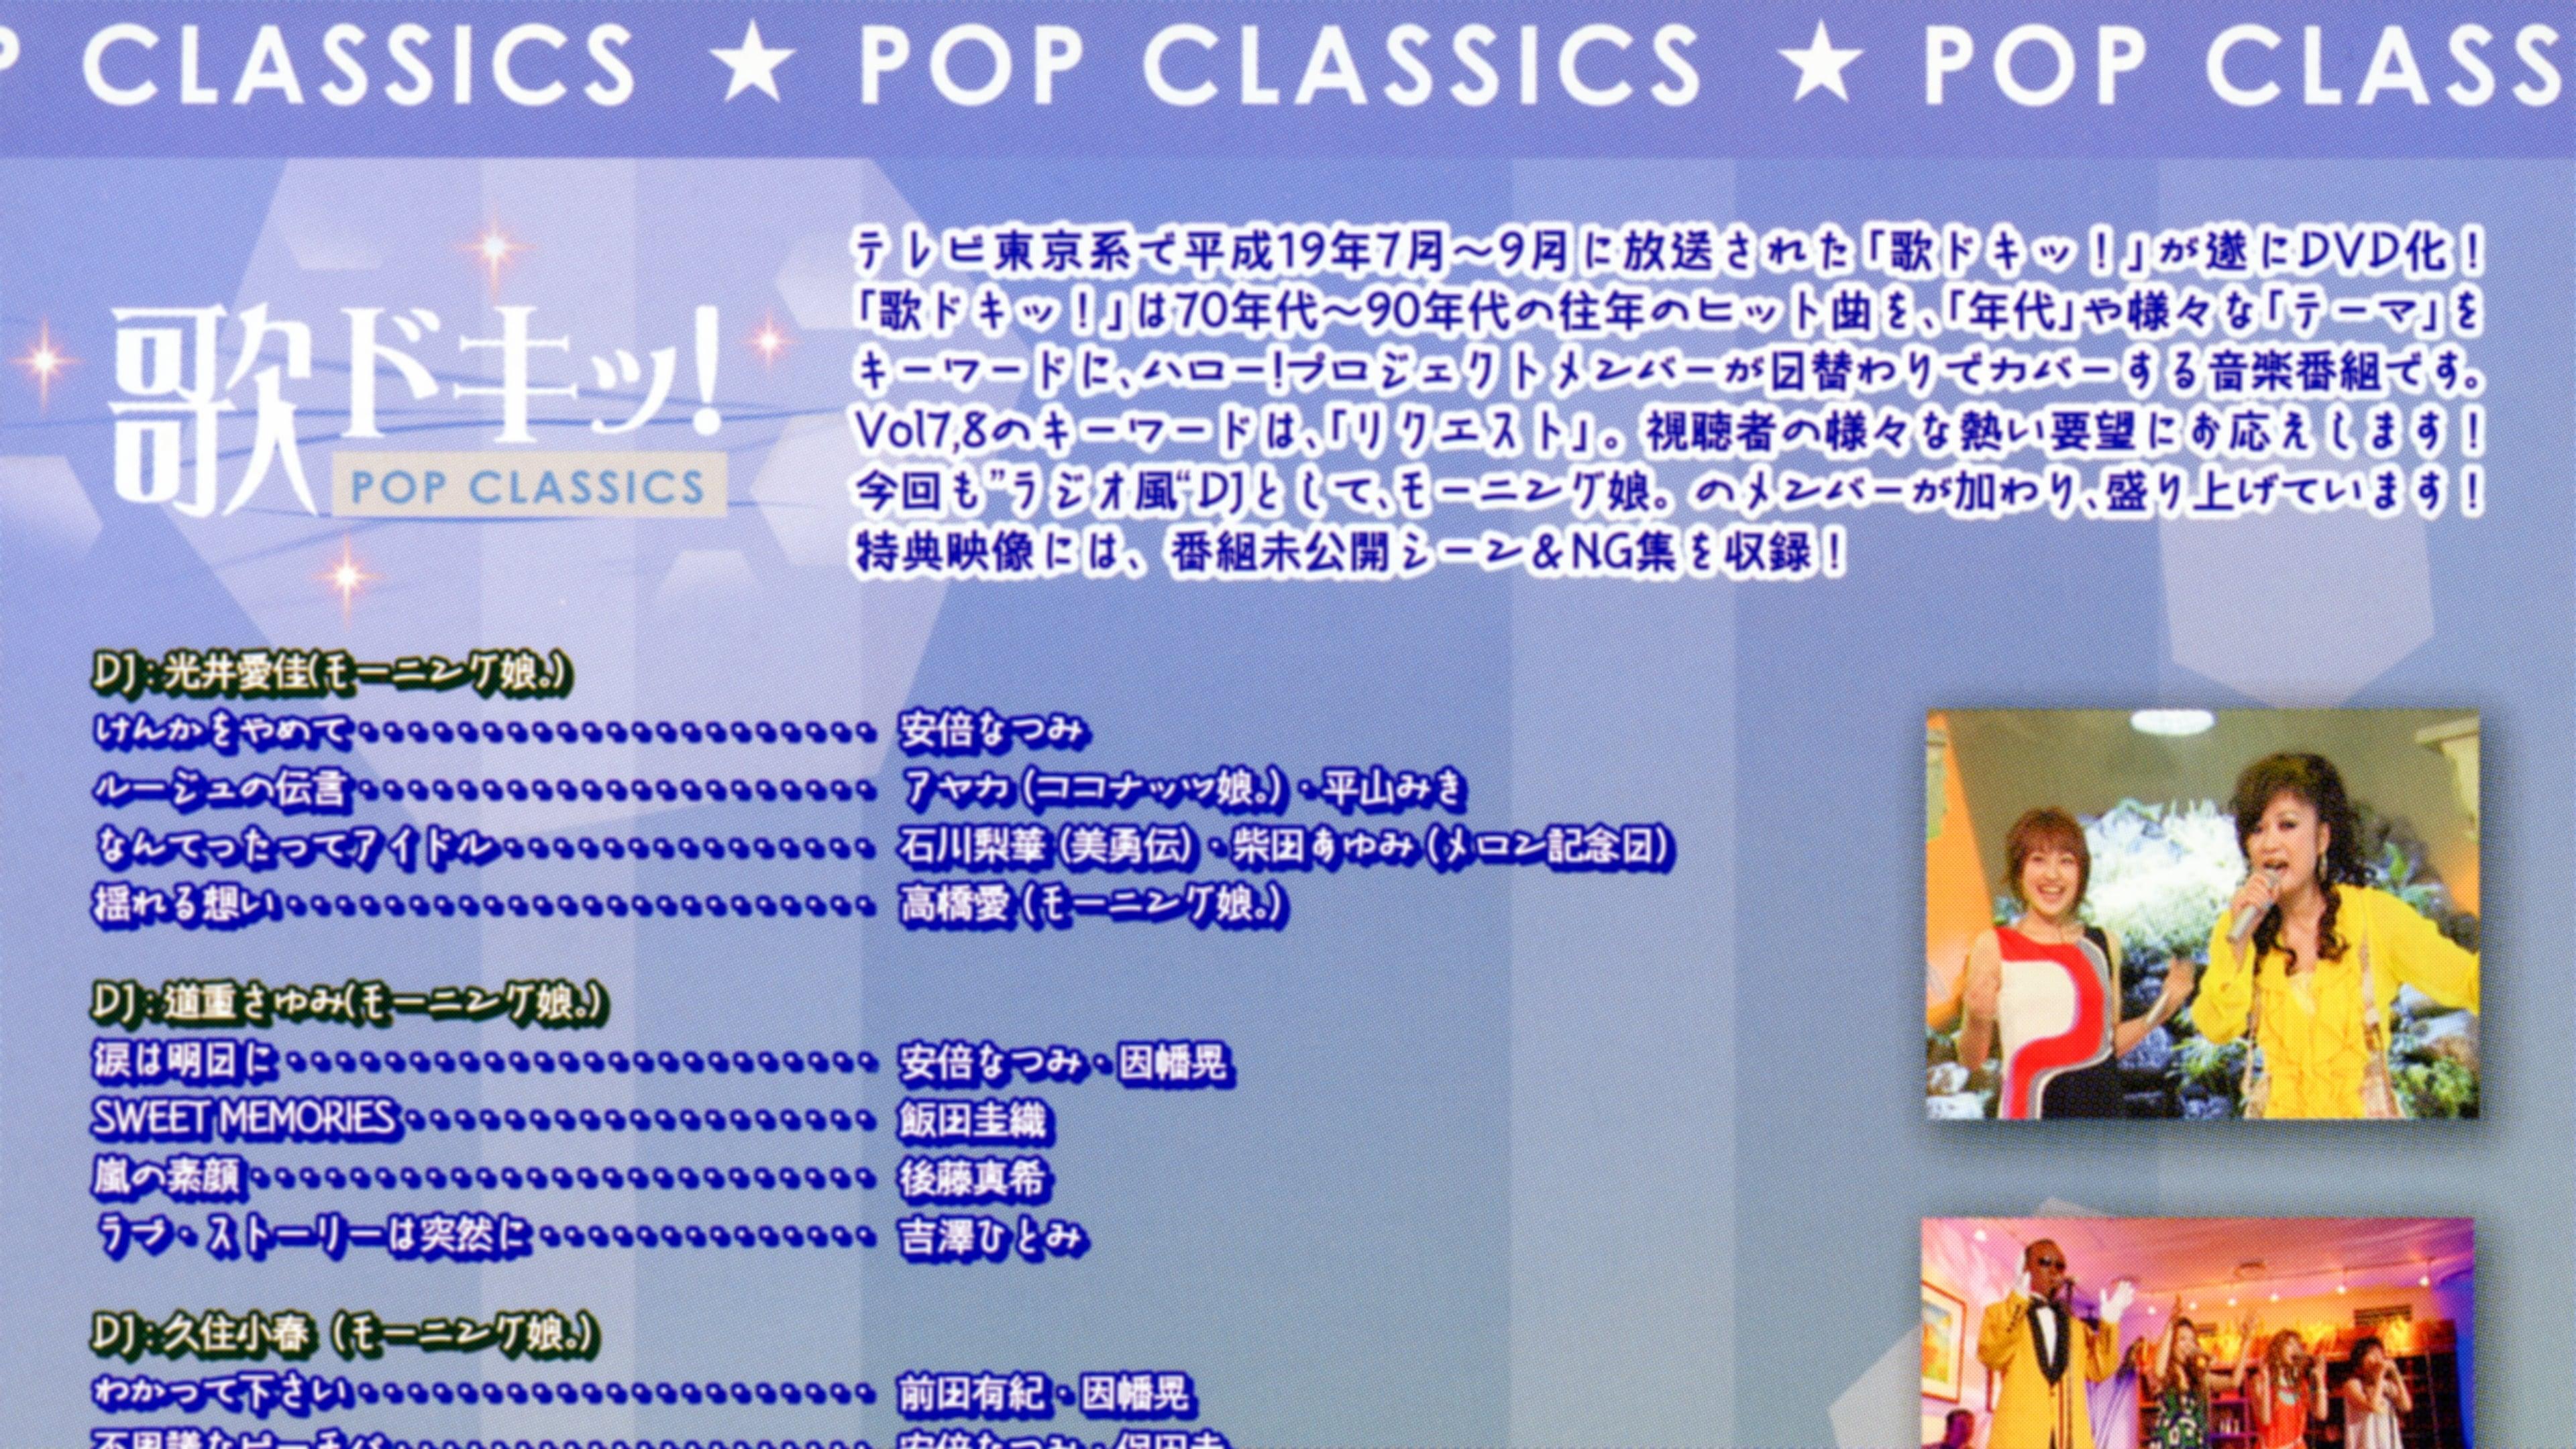 Uta Doki! Pop Classics Vol.7 backdrop